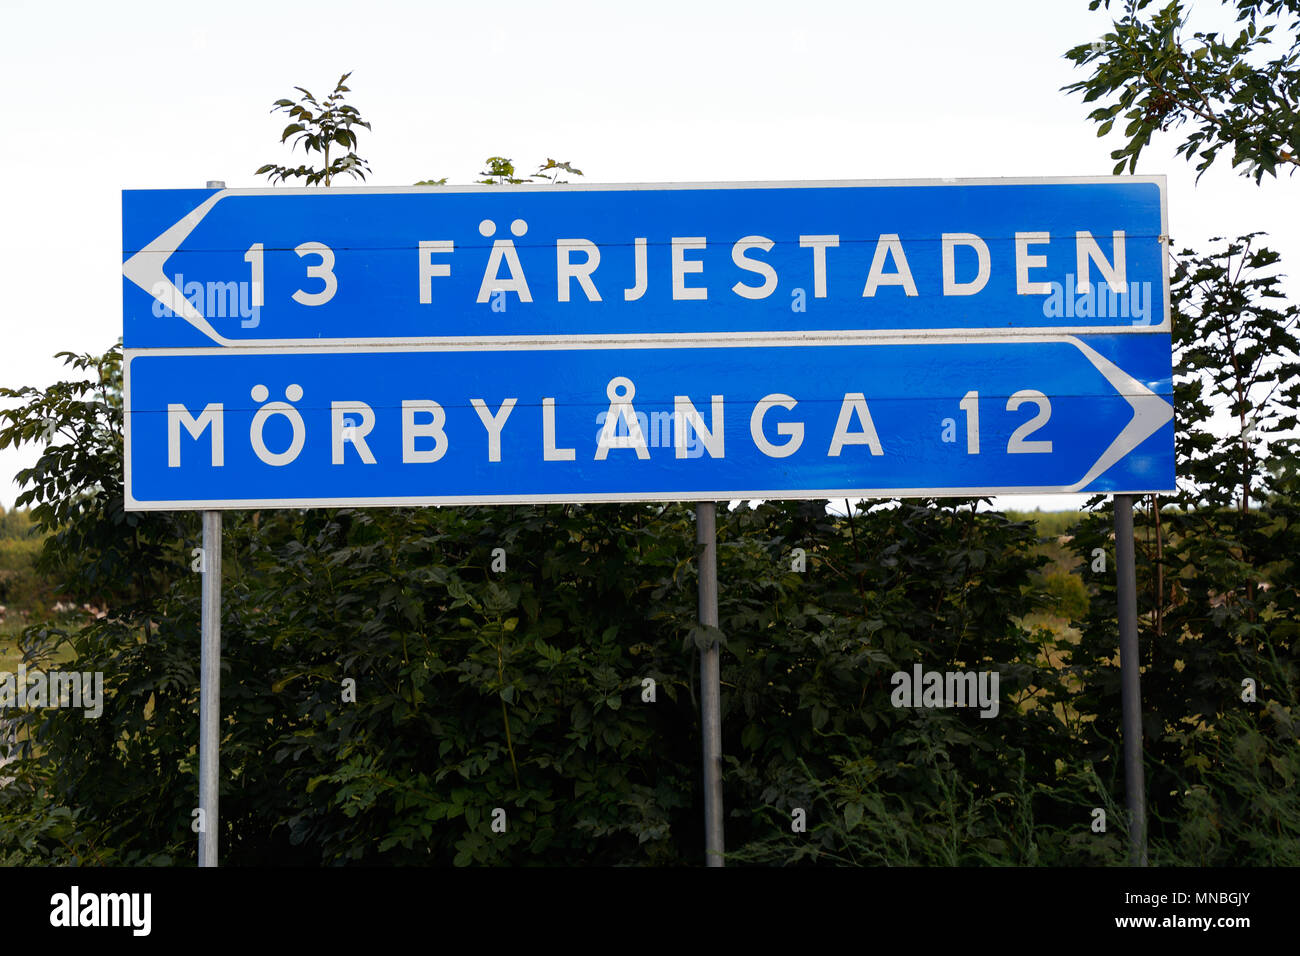 Cartello con le distanze per i due luoghi Farjestaden e Morbylana situato nella provincia svedese di Oland. Foto Stock